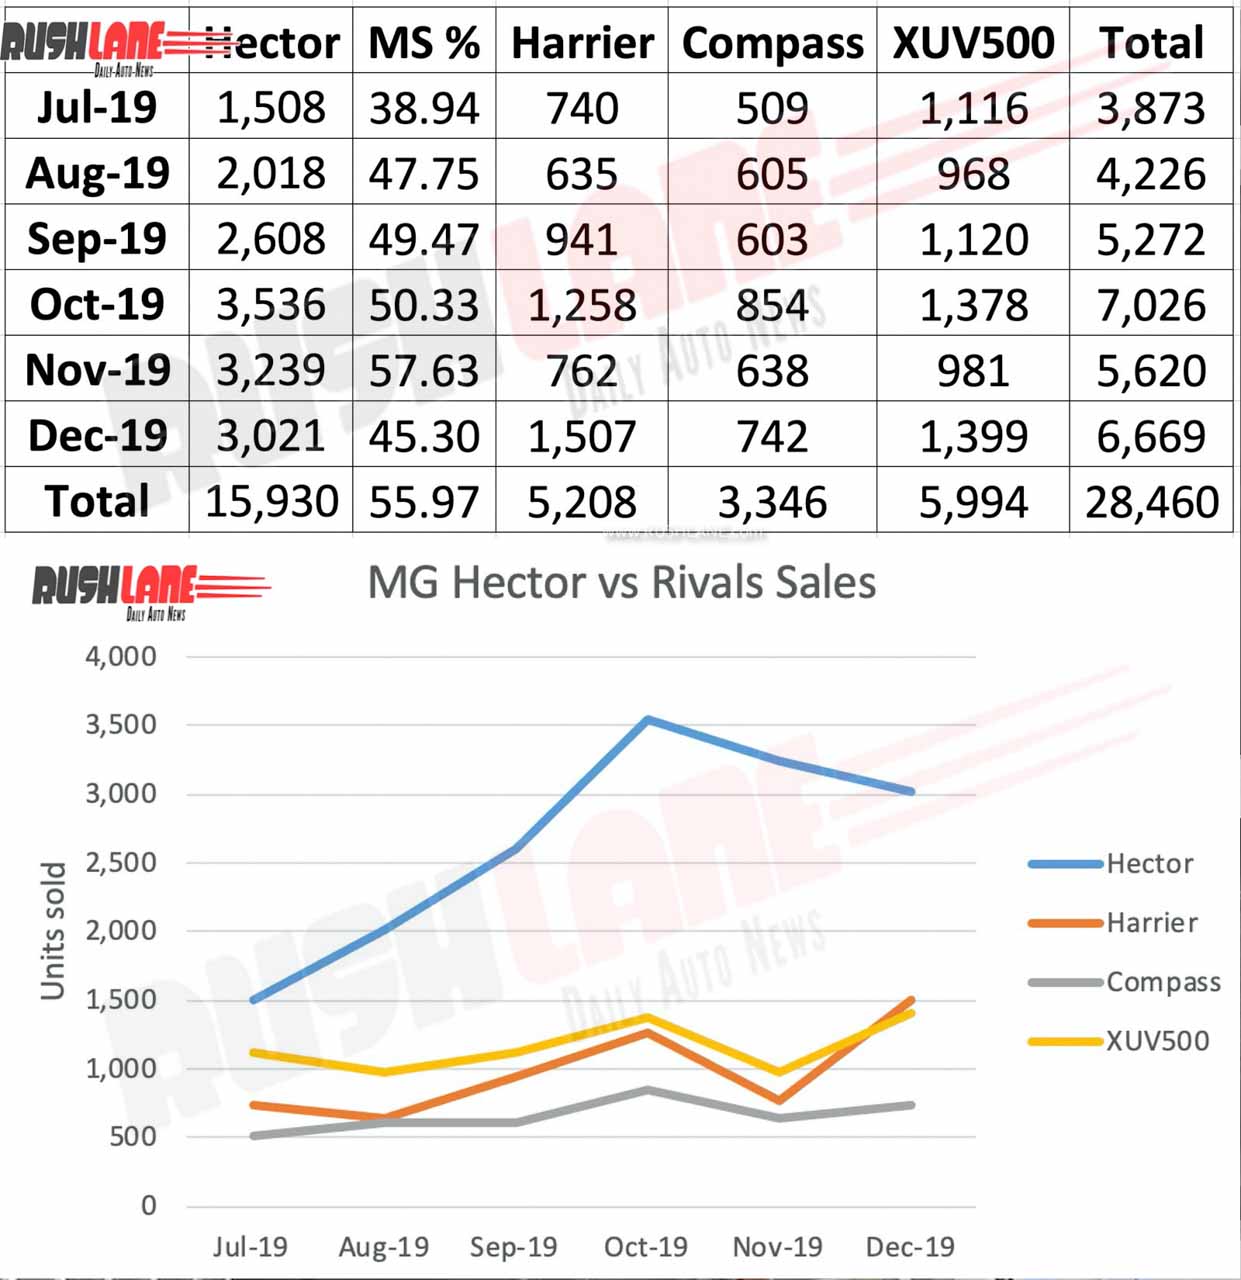 MG Hector vs rival sales in 2019